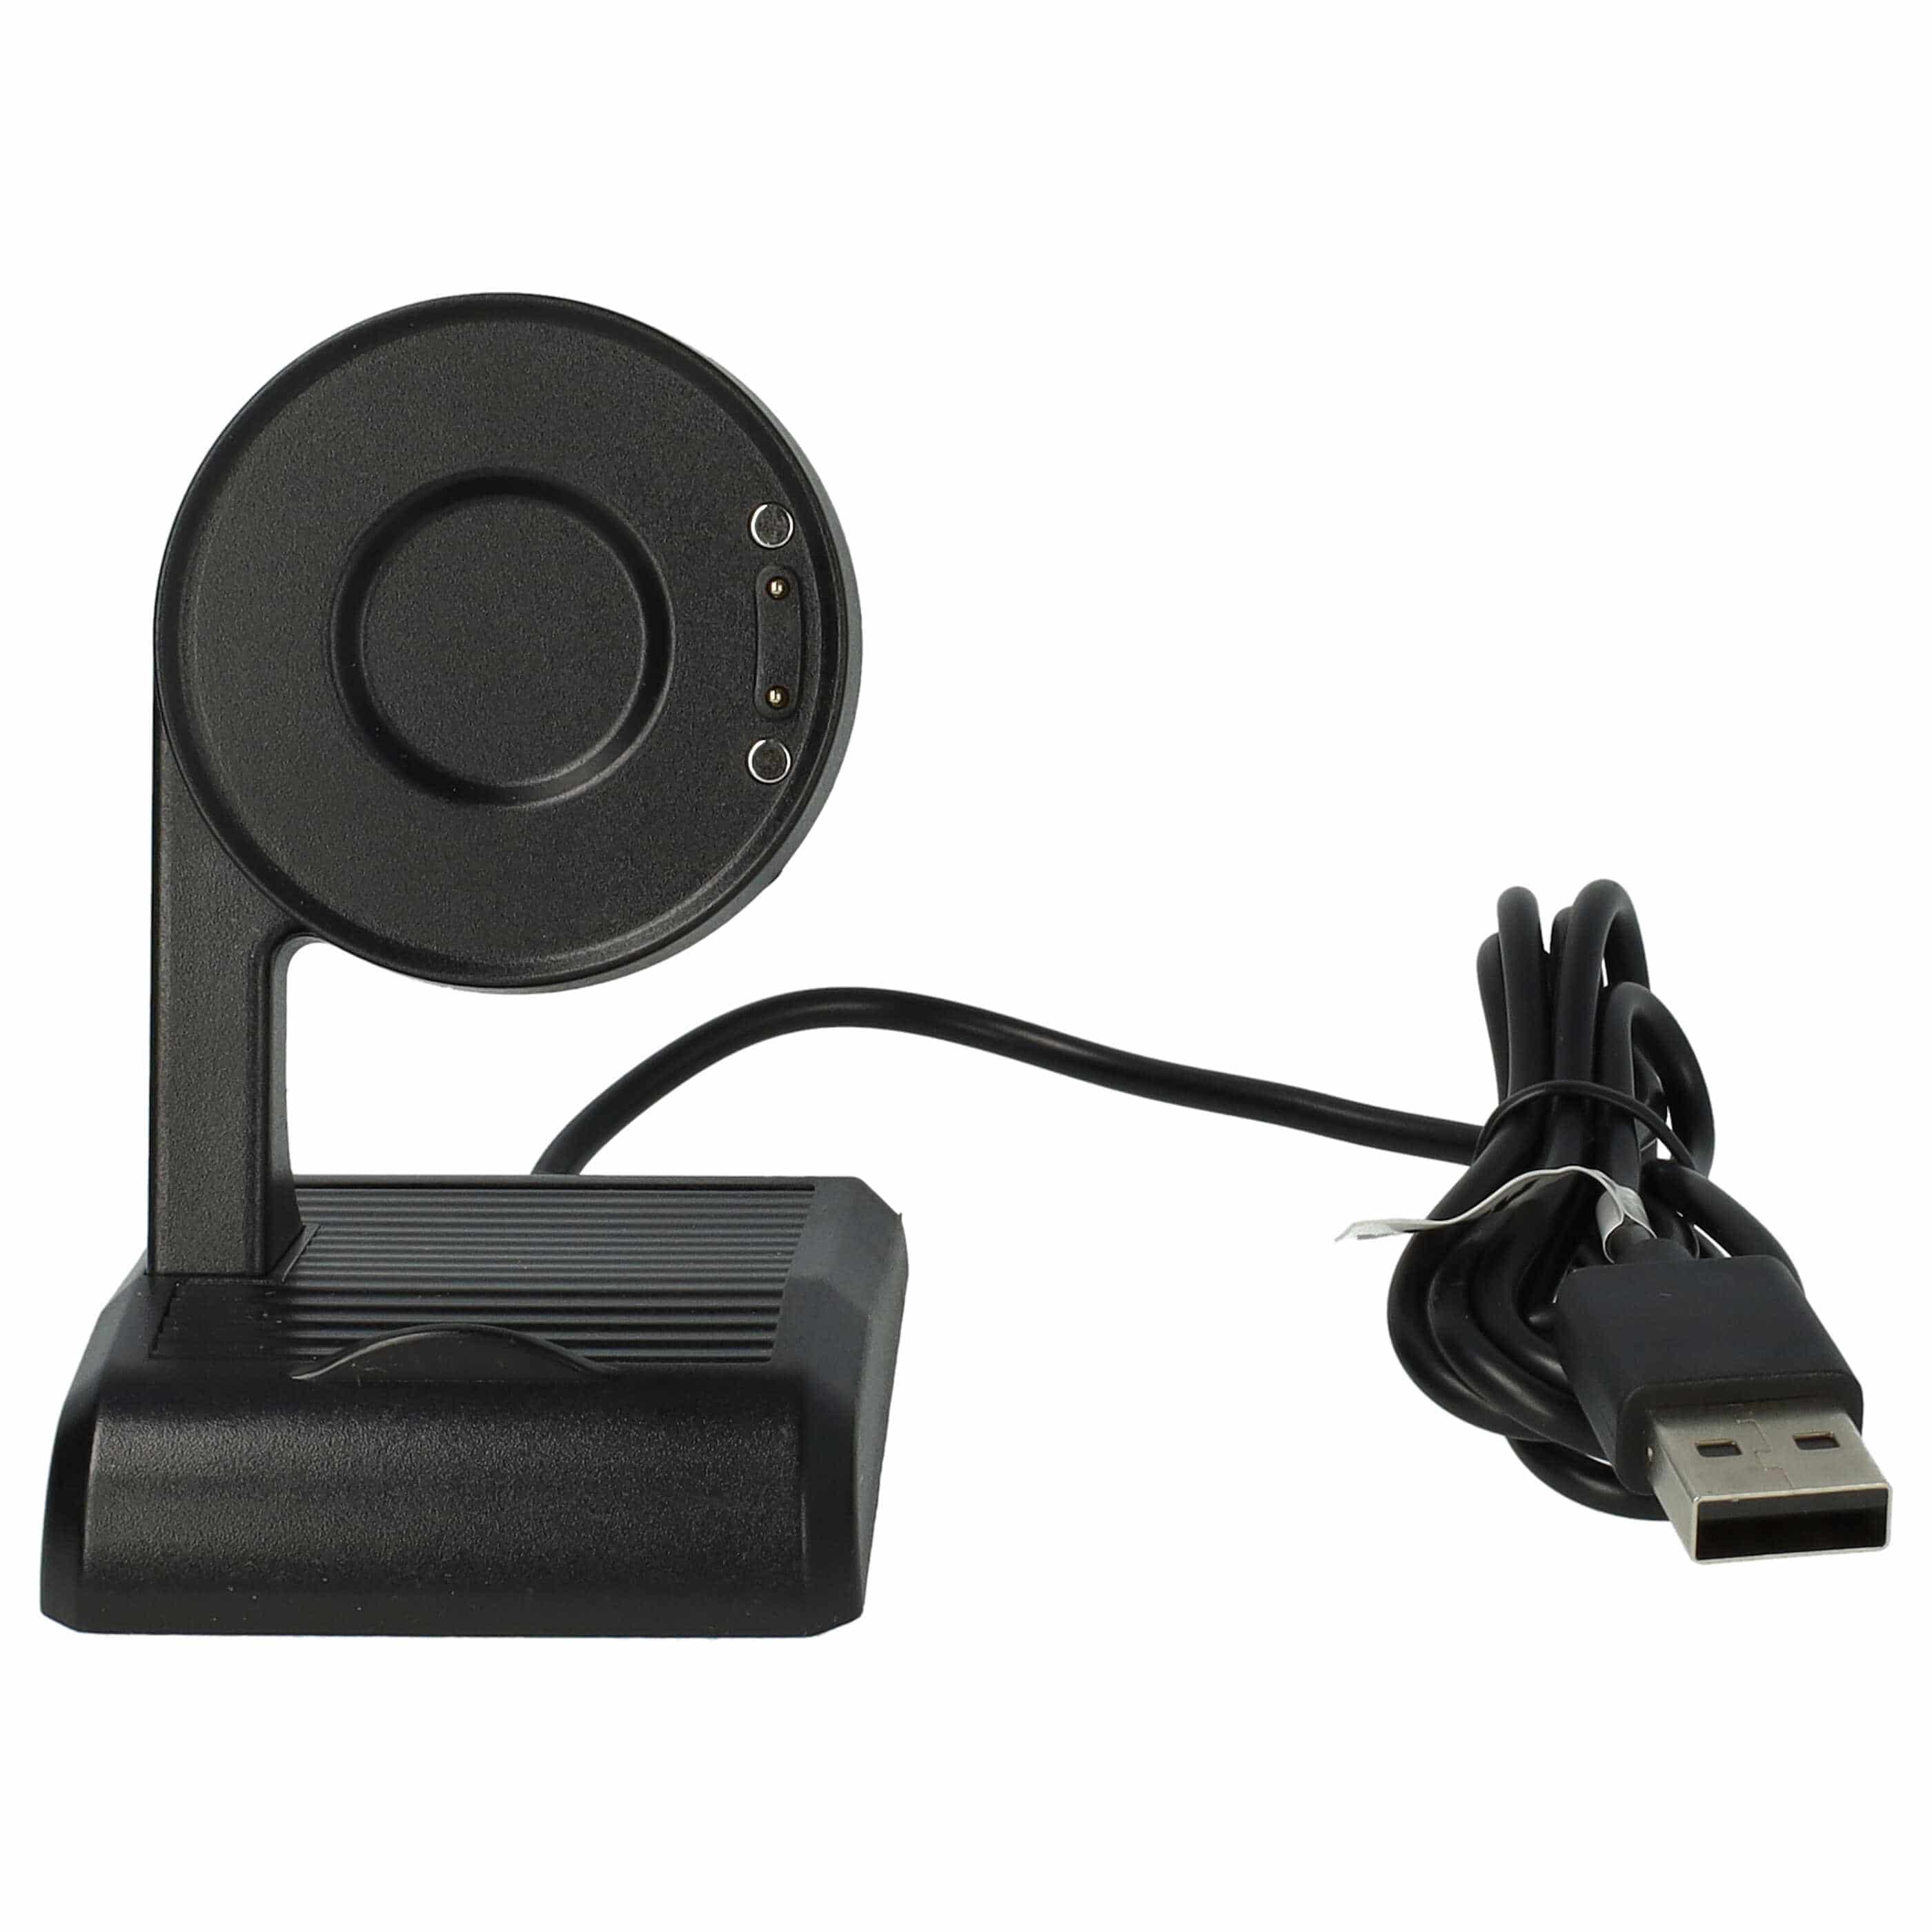 Station de charge USB pour smartwatch Mobvoi TicWatch E3, Pro 3, Pro 3 LTE - socle + câble, 100 cm